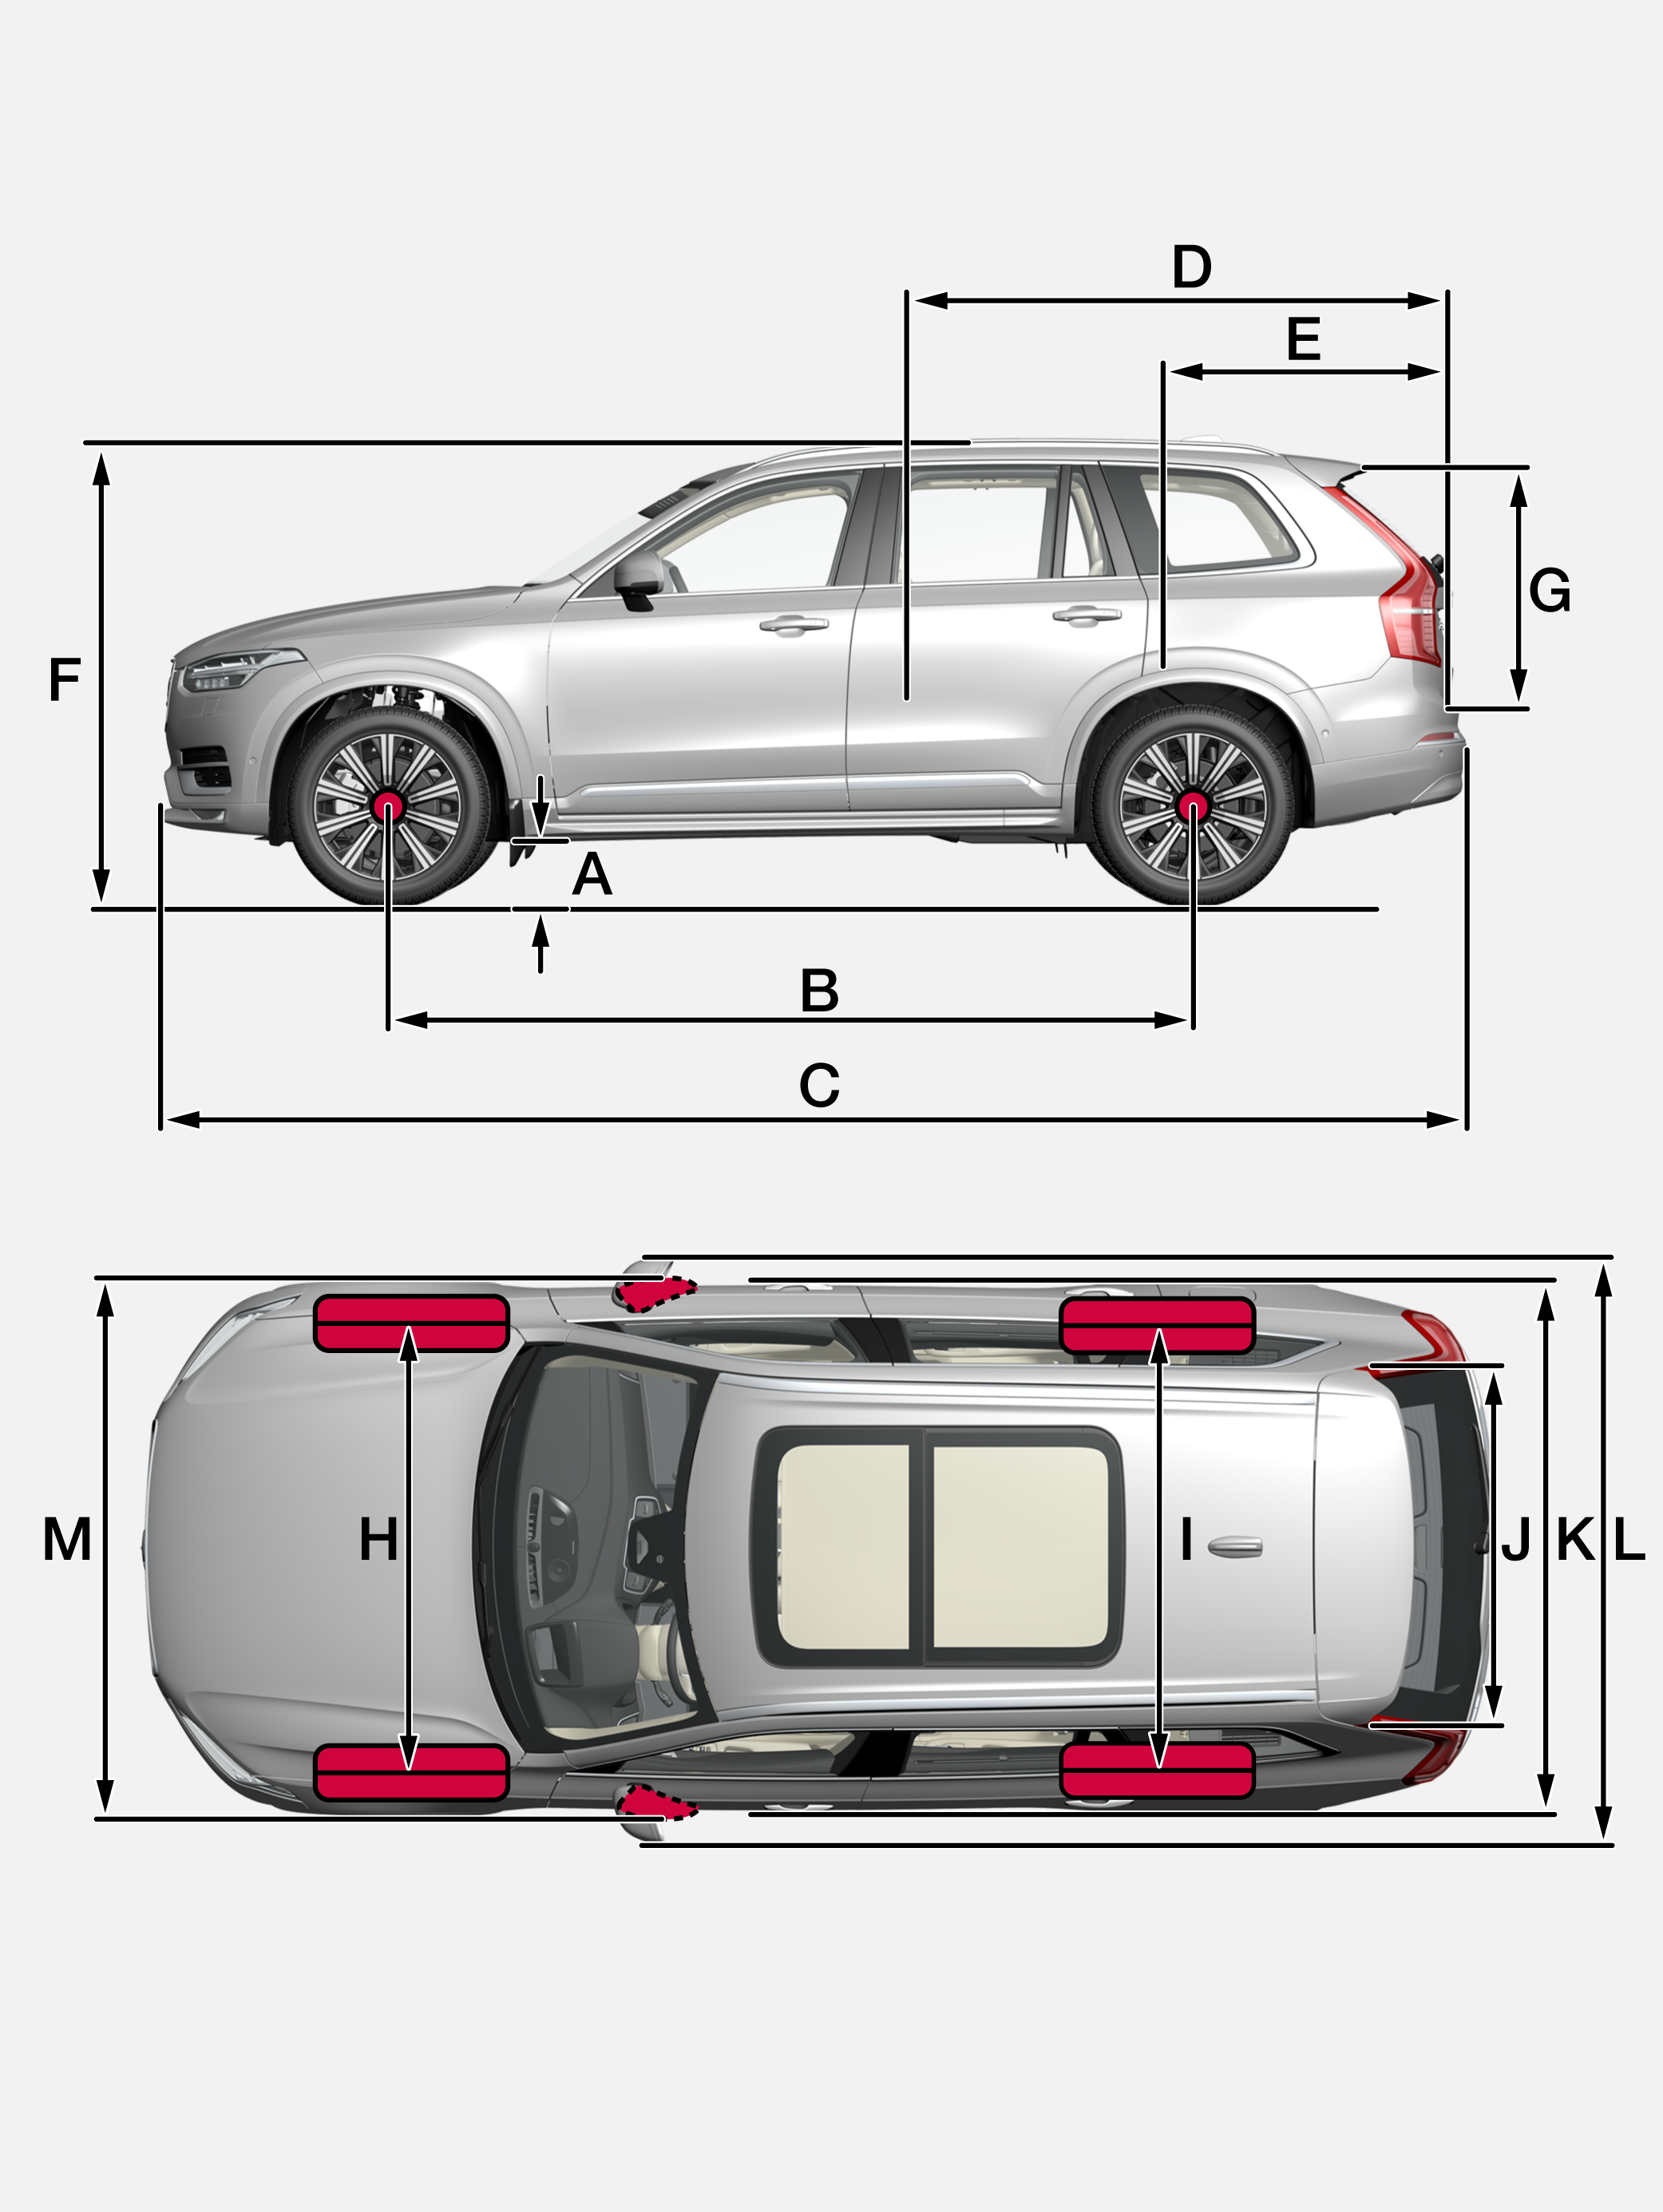 Volvo XC90 Dimensions: Interior, Exterior, & Cargo Space